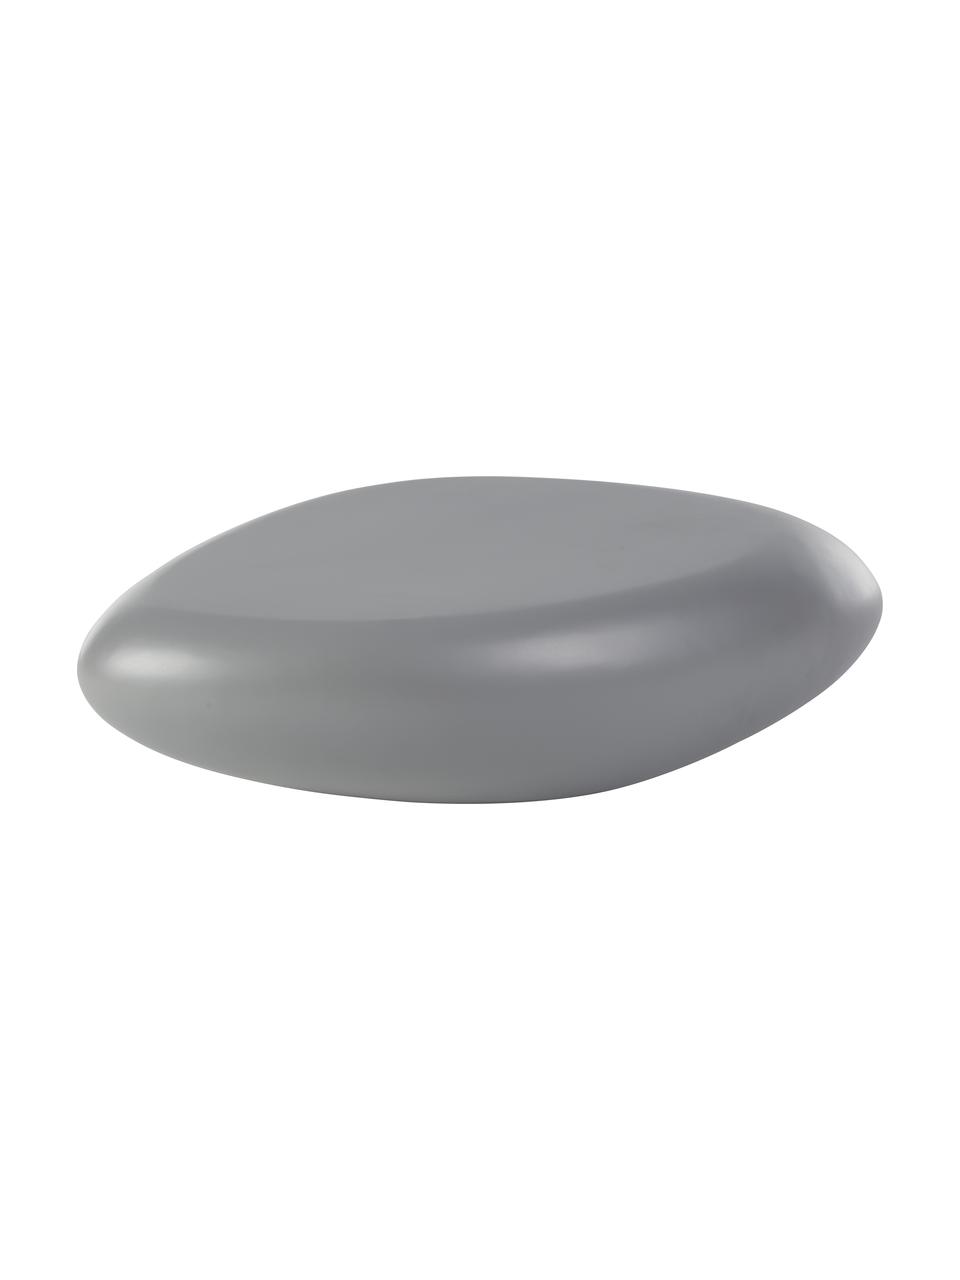 Ovaler Couchtisch Pietra in Stein-Form, Glasfaserkunststoff, lackiert, Grau, B 116 x T 77 cm